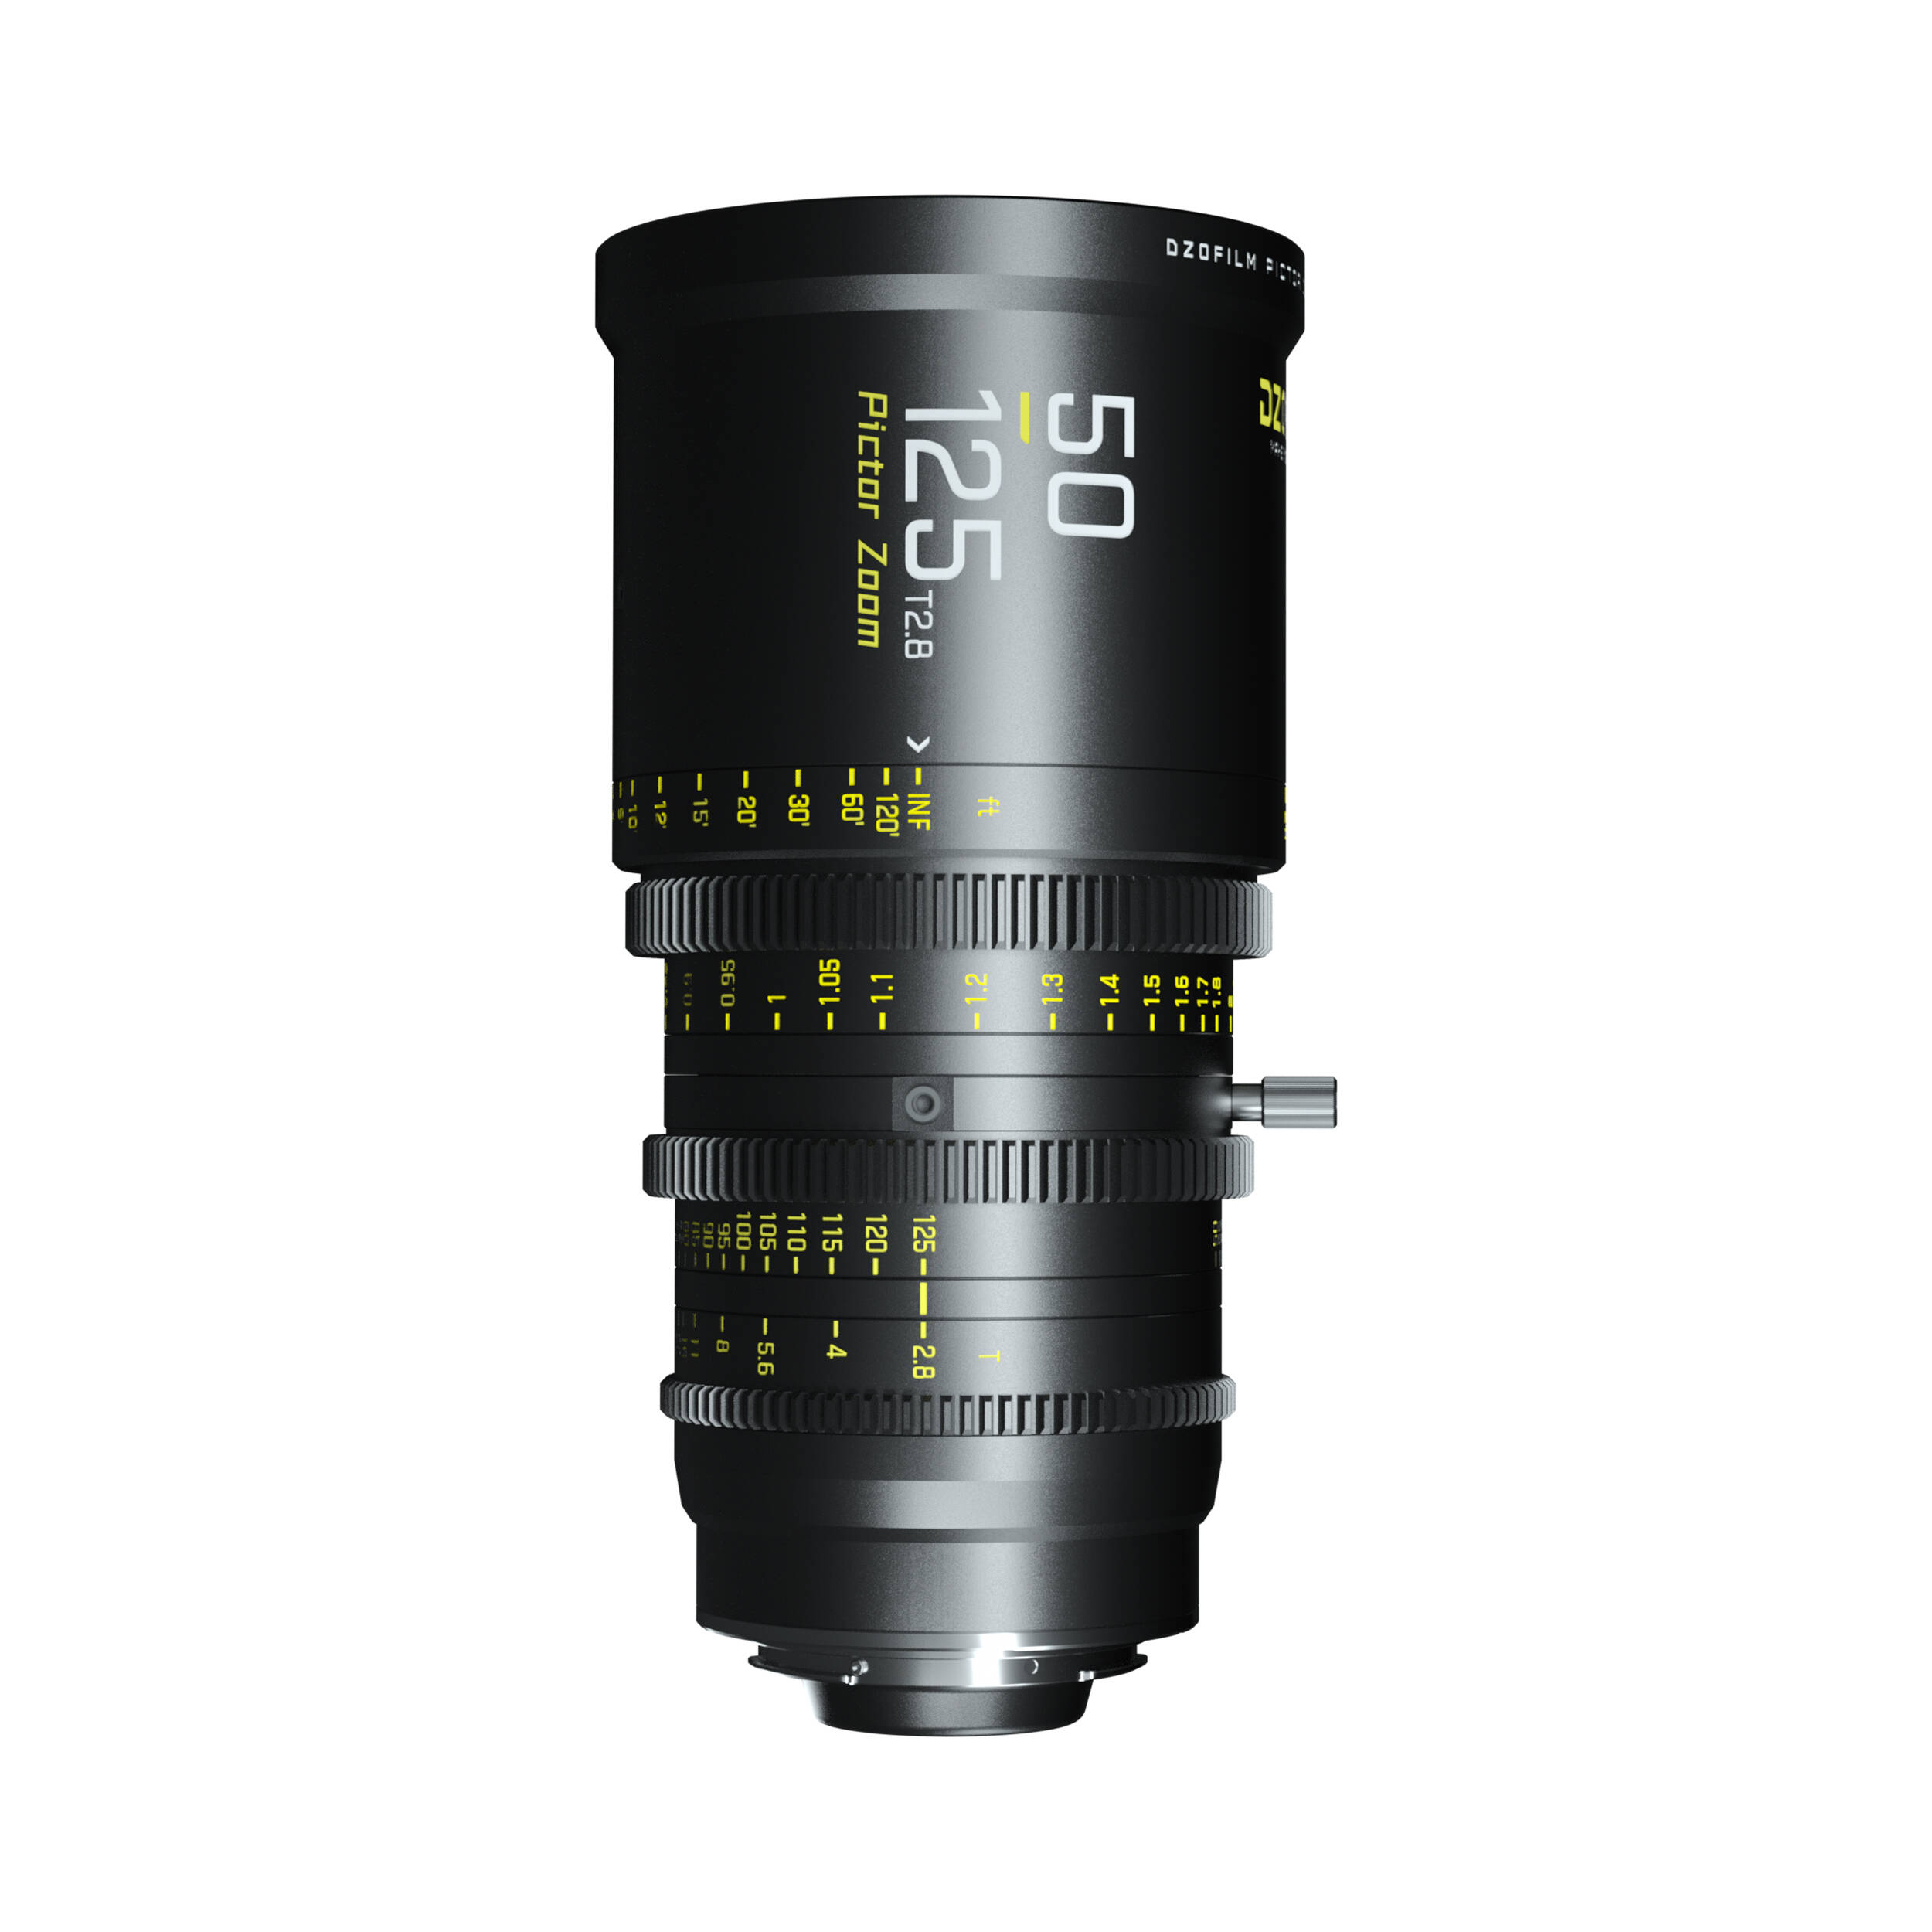 Dzofilm Pictor 50 à 125 mm T2.8 Super35 PARFOCAL ZOOM LENS (PL Mount et EF Mount)